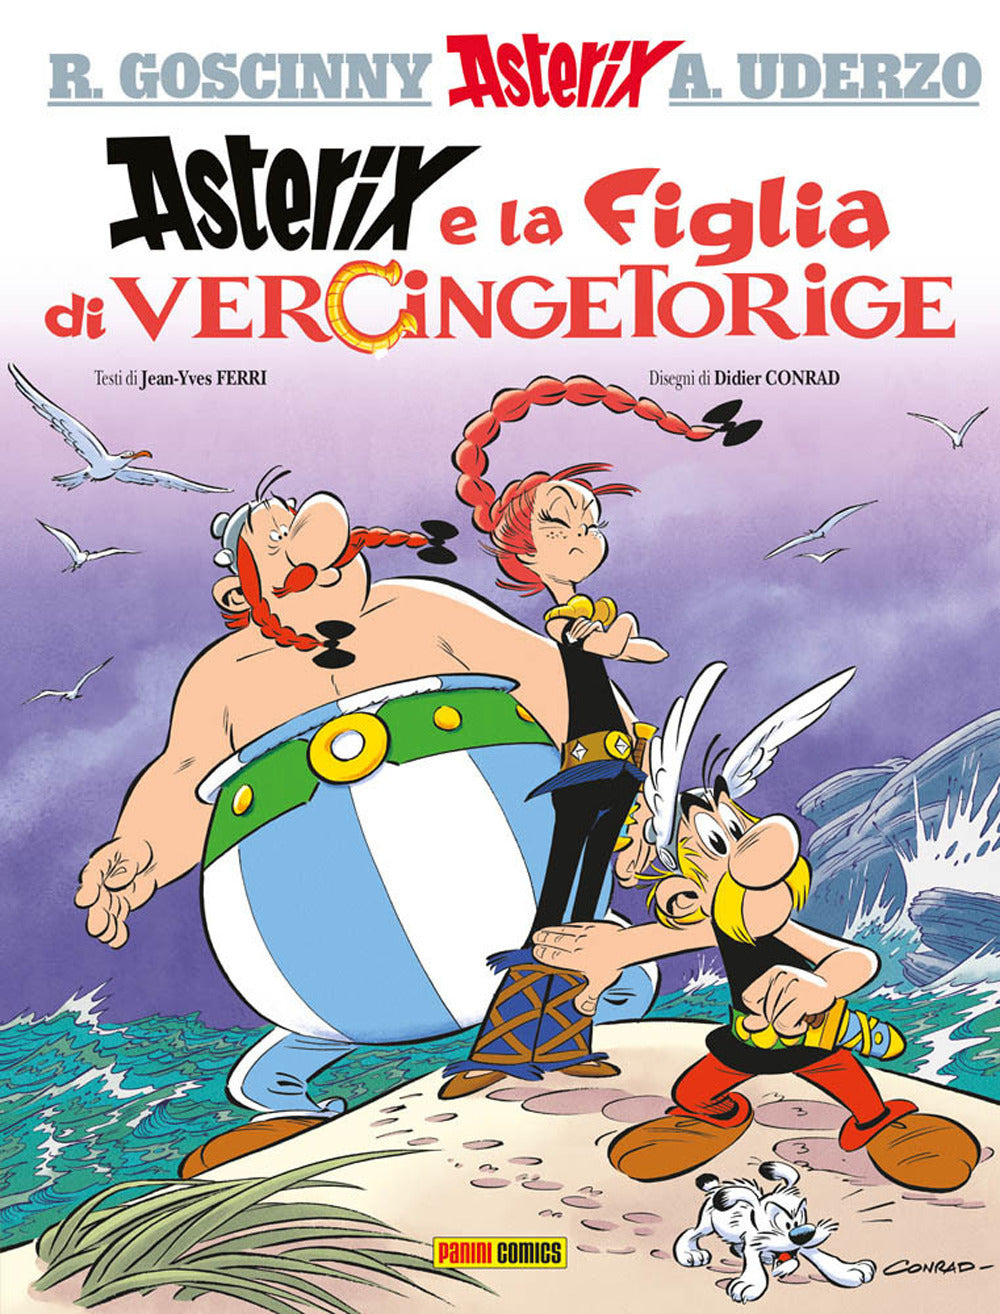 La figlia di Vercingetorige. Asterix.